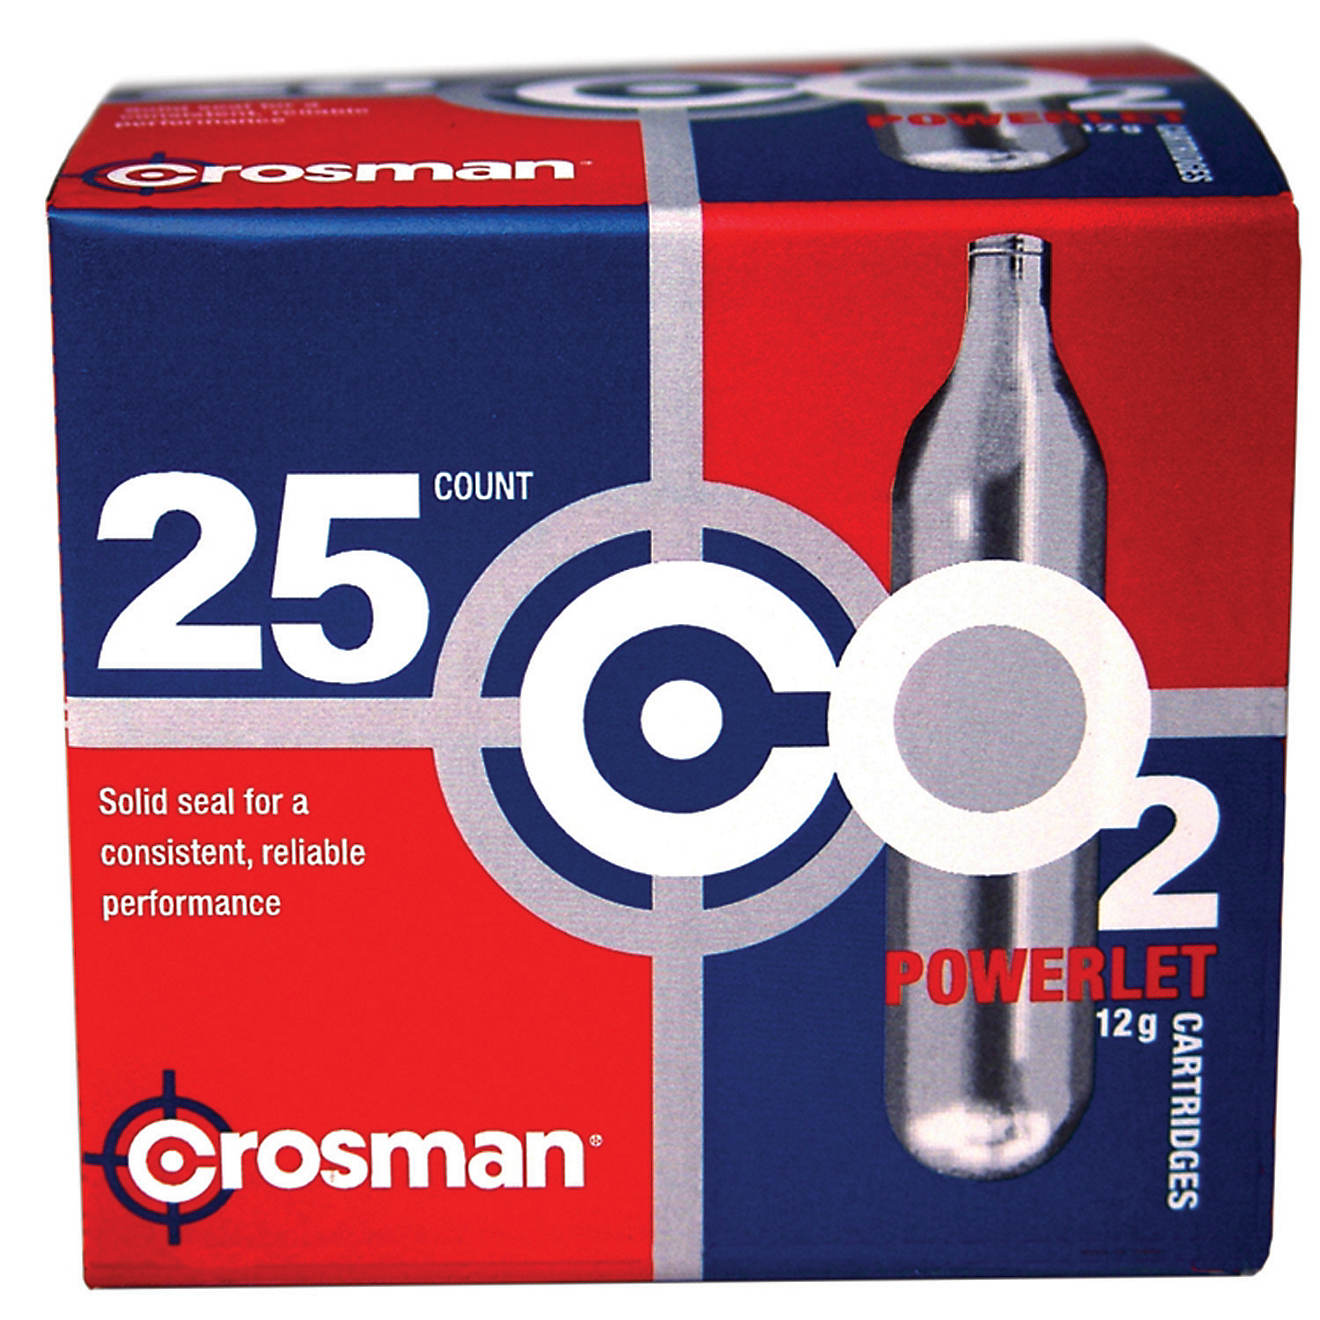 Crosman Copperhead Powerlet 12-Gram CO₂ Cartridges 25-Pack                                                                     - view number 1